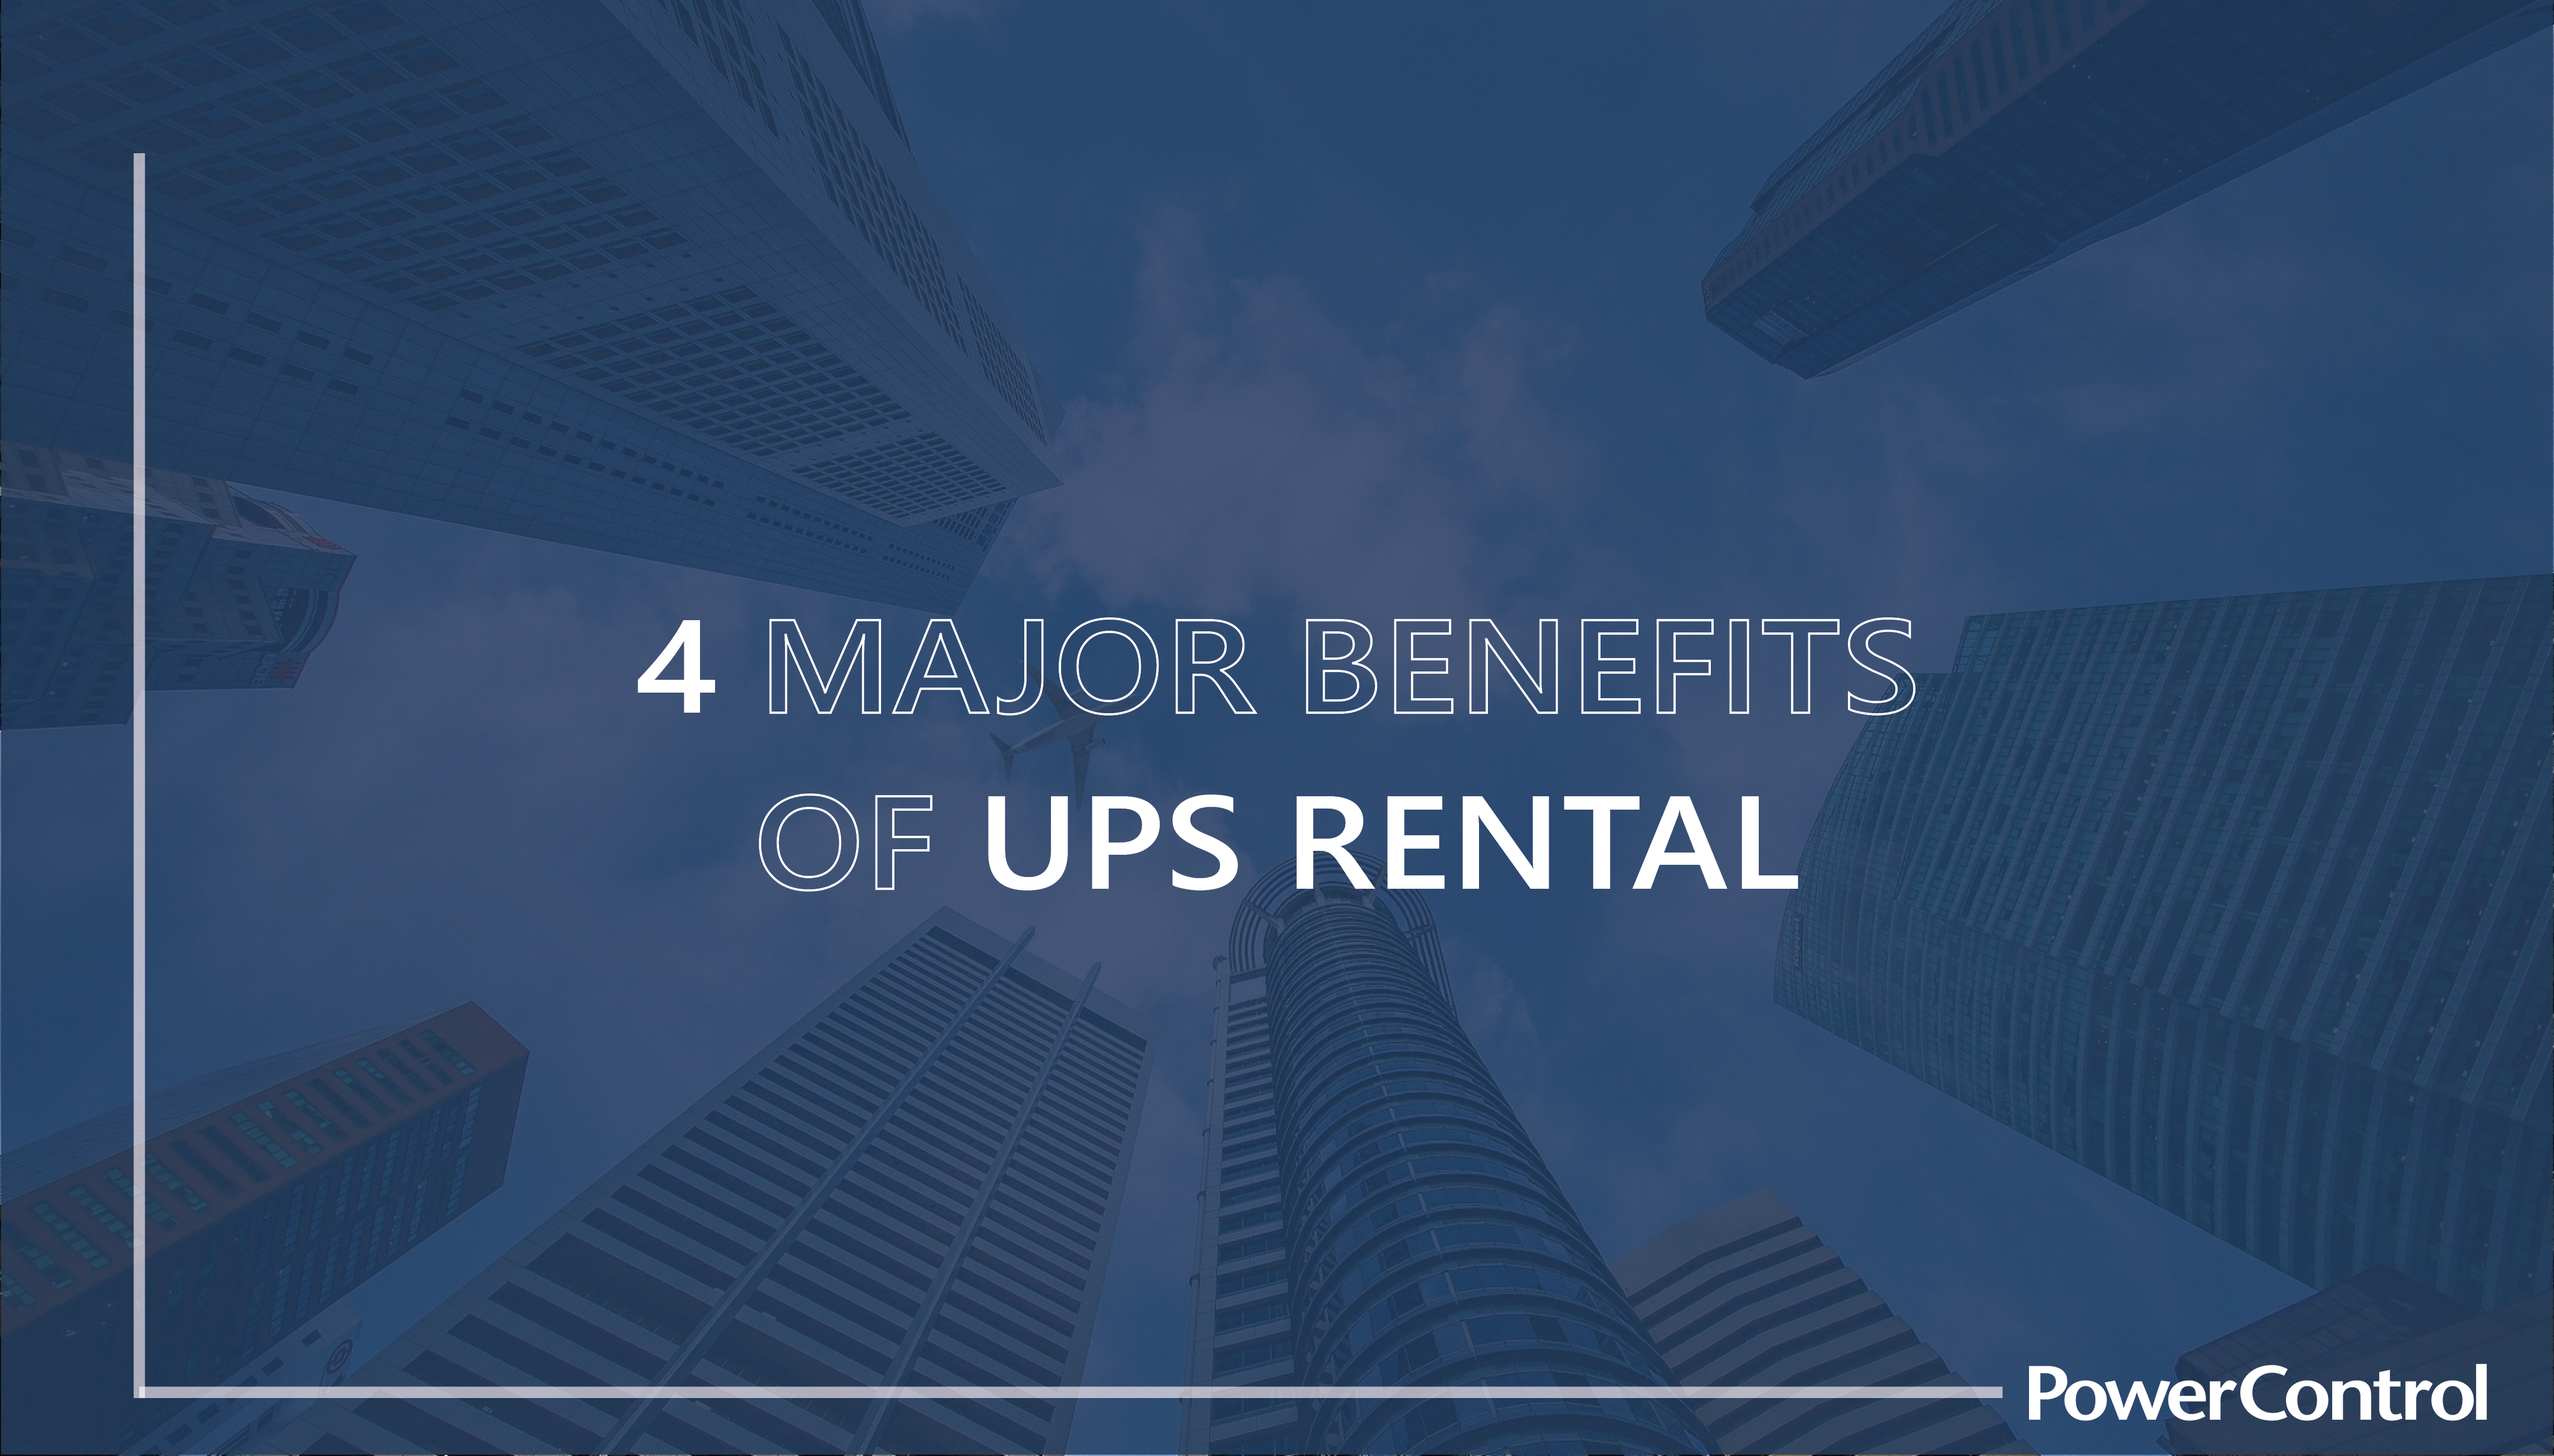 12 THE 4 MAJOR BENEFITS OF UPS RENTAL